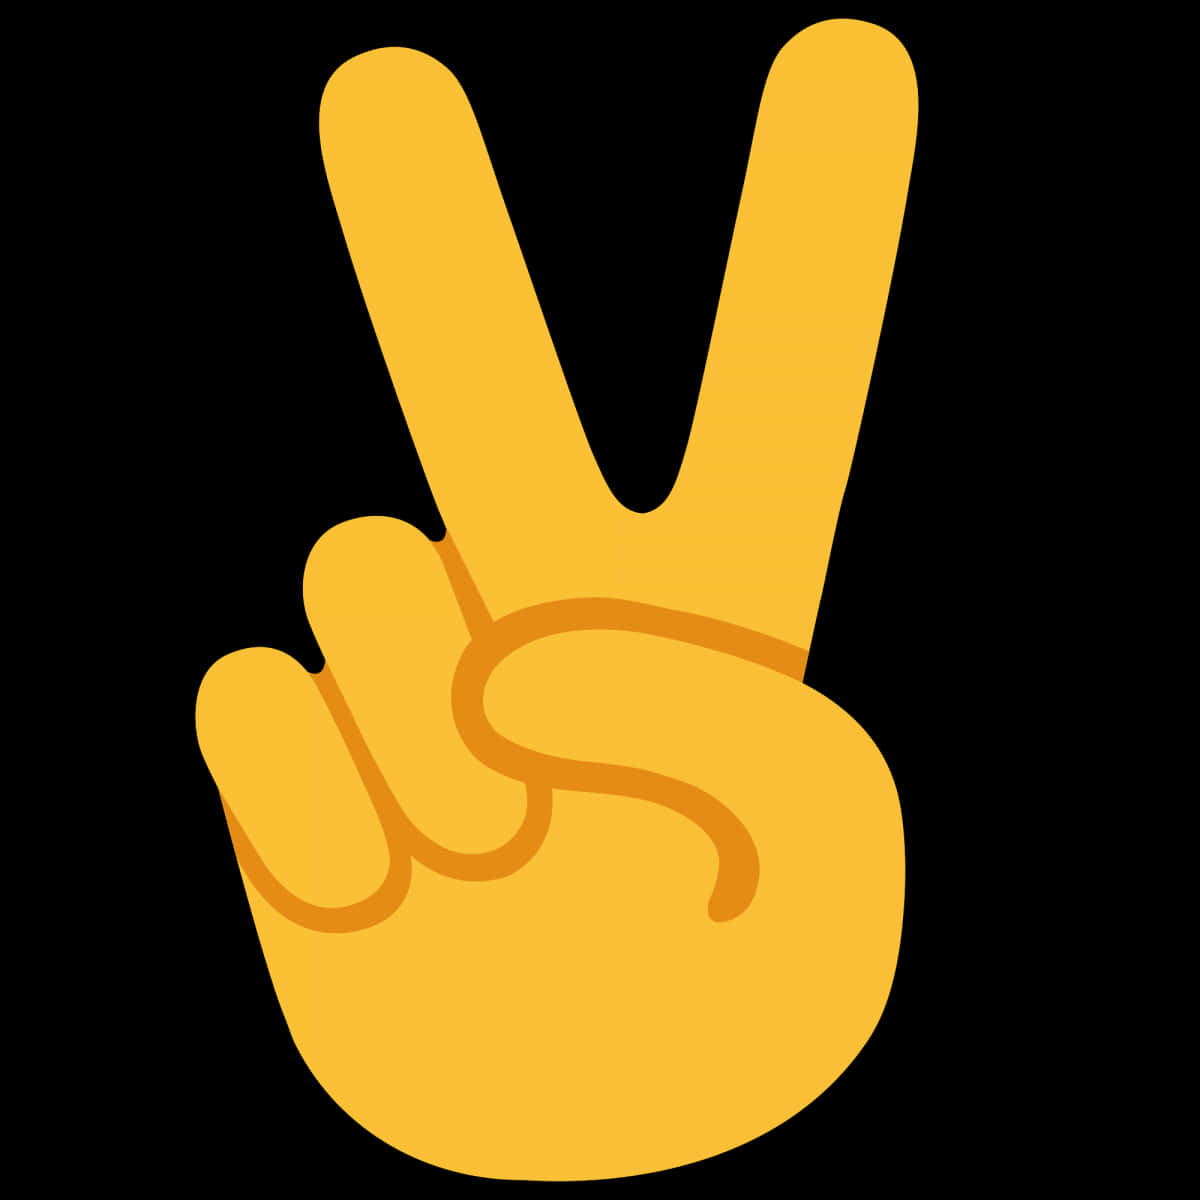 Golden Peace Sign Emoji PNG image